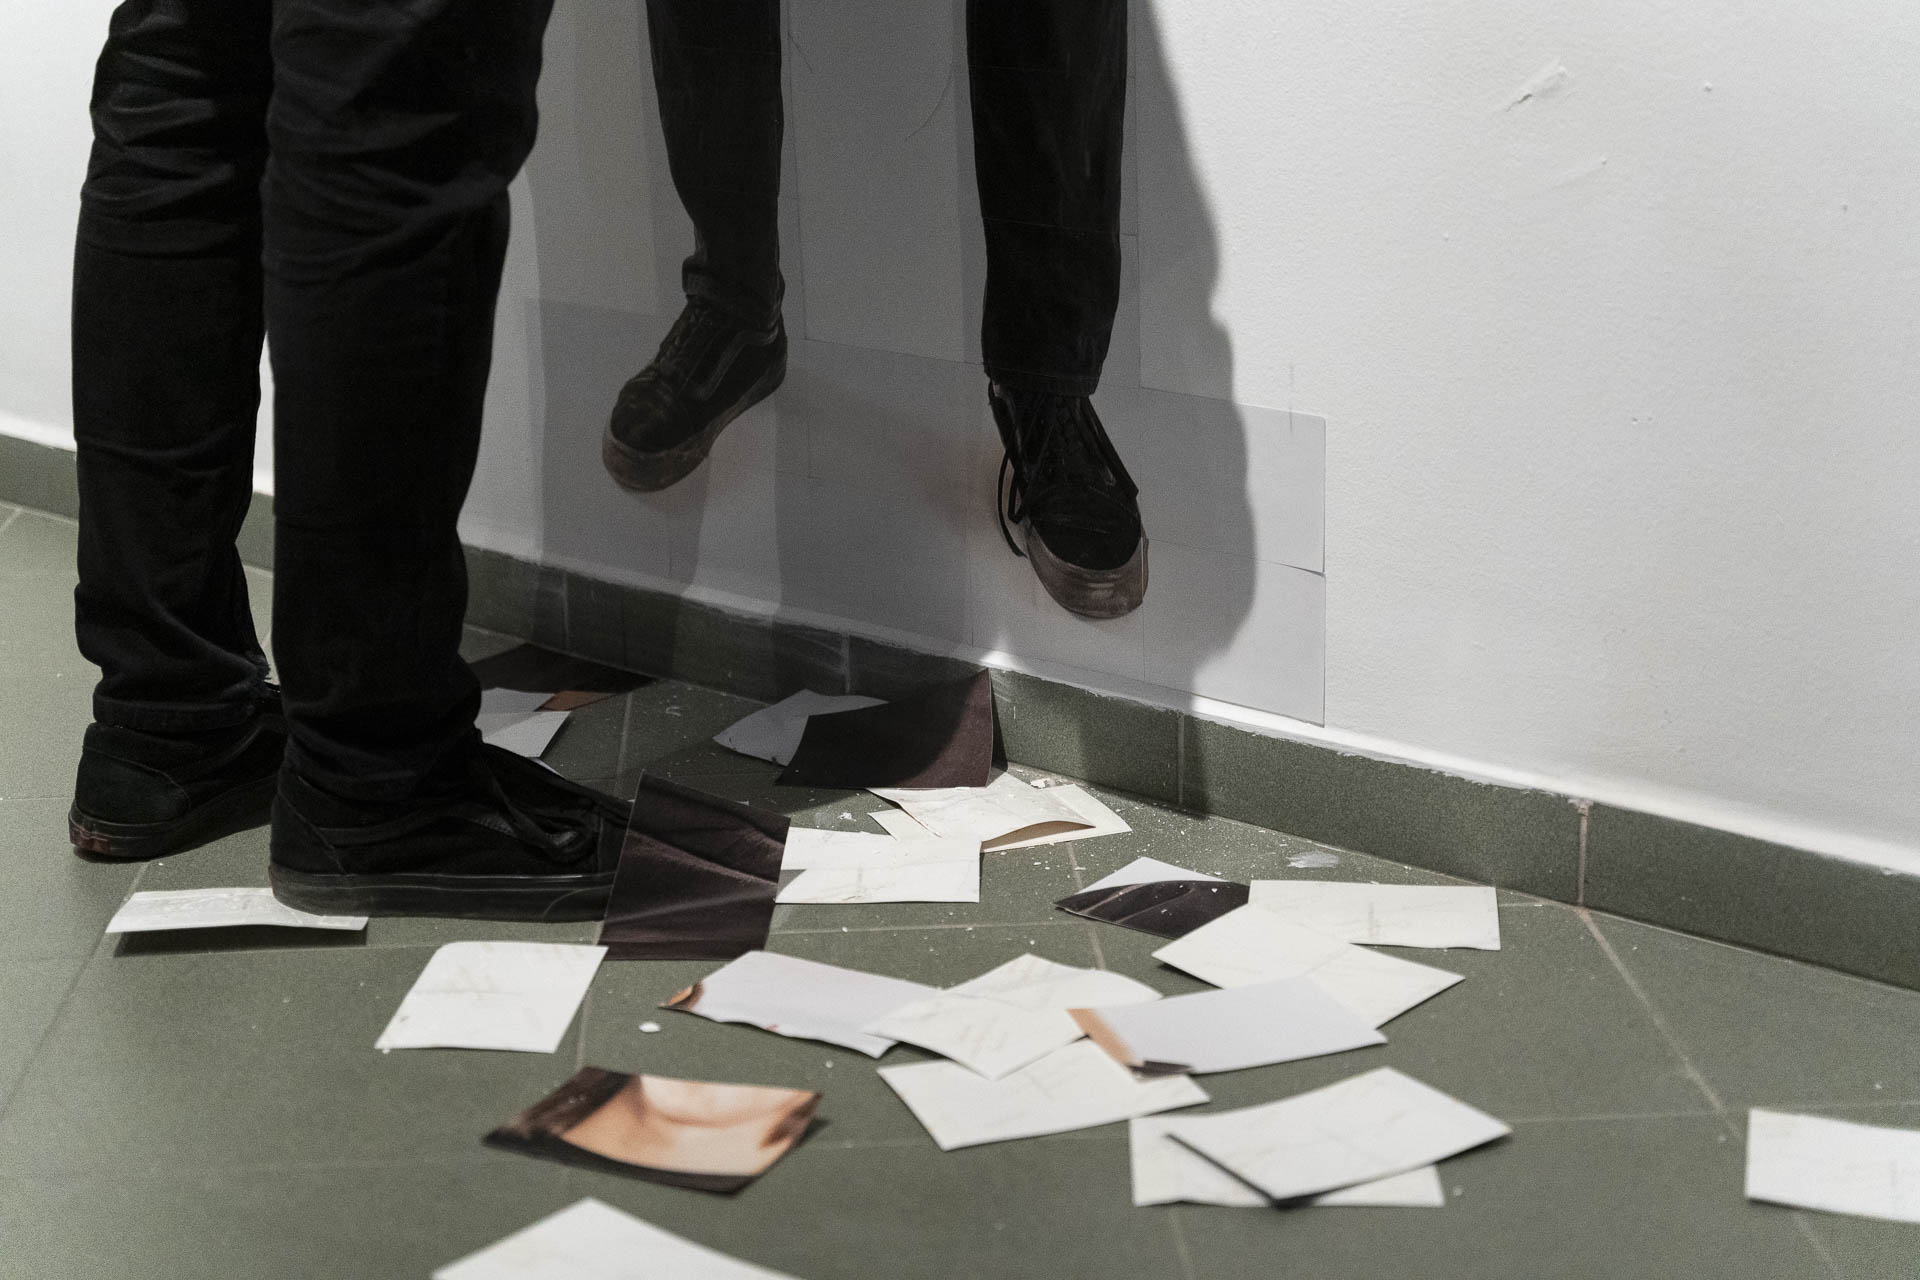 Nogi mężczyzny przy ścianie na której widać przyklejone zdjęcie tego samego fragmentu ciała w identycznych co rzeczywiste butach i spodniach. Na podłodze rozrzucone w nieładzie, wcześniej oderwane od ściany fragmenty zdjęcia